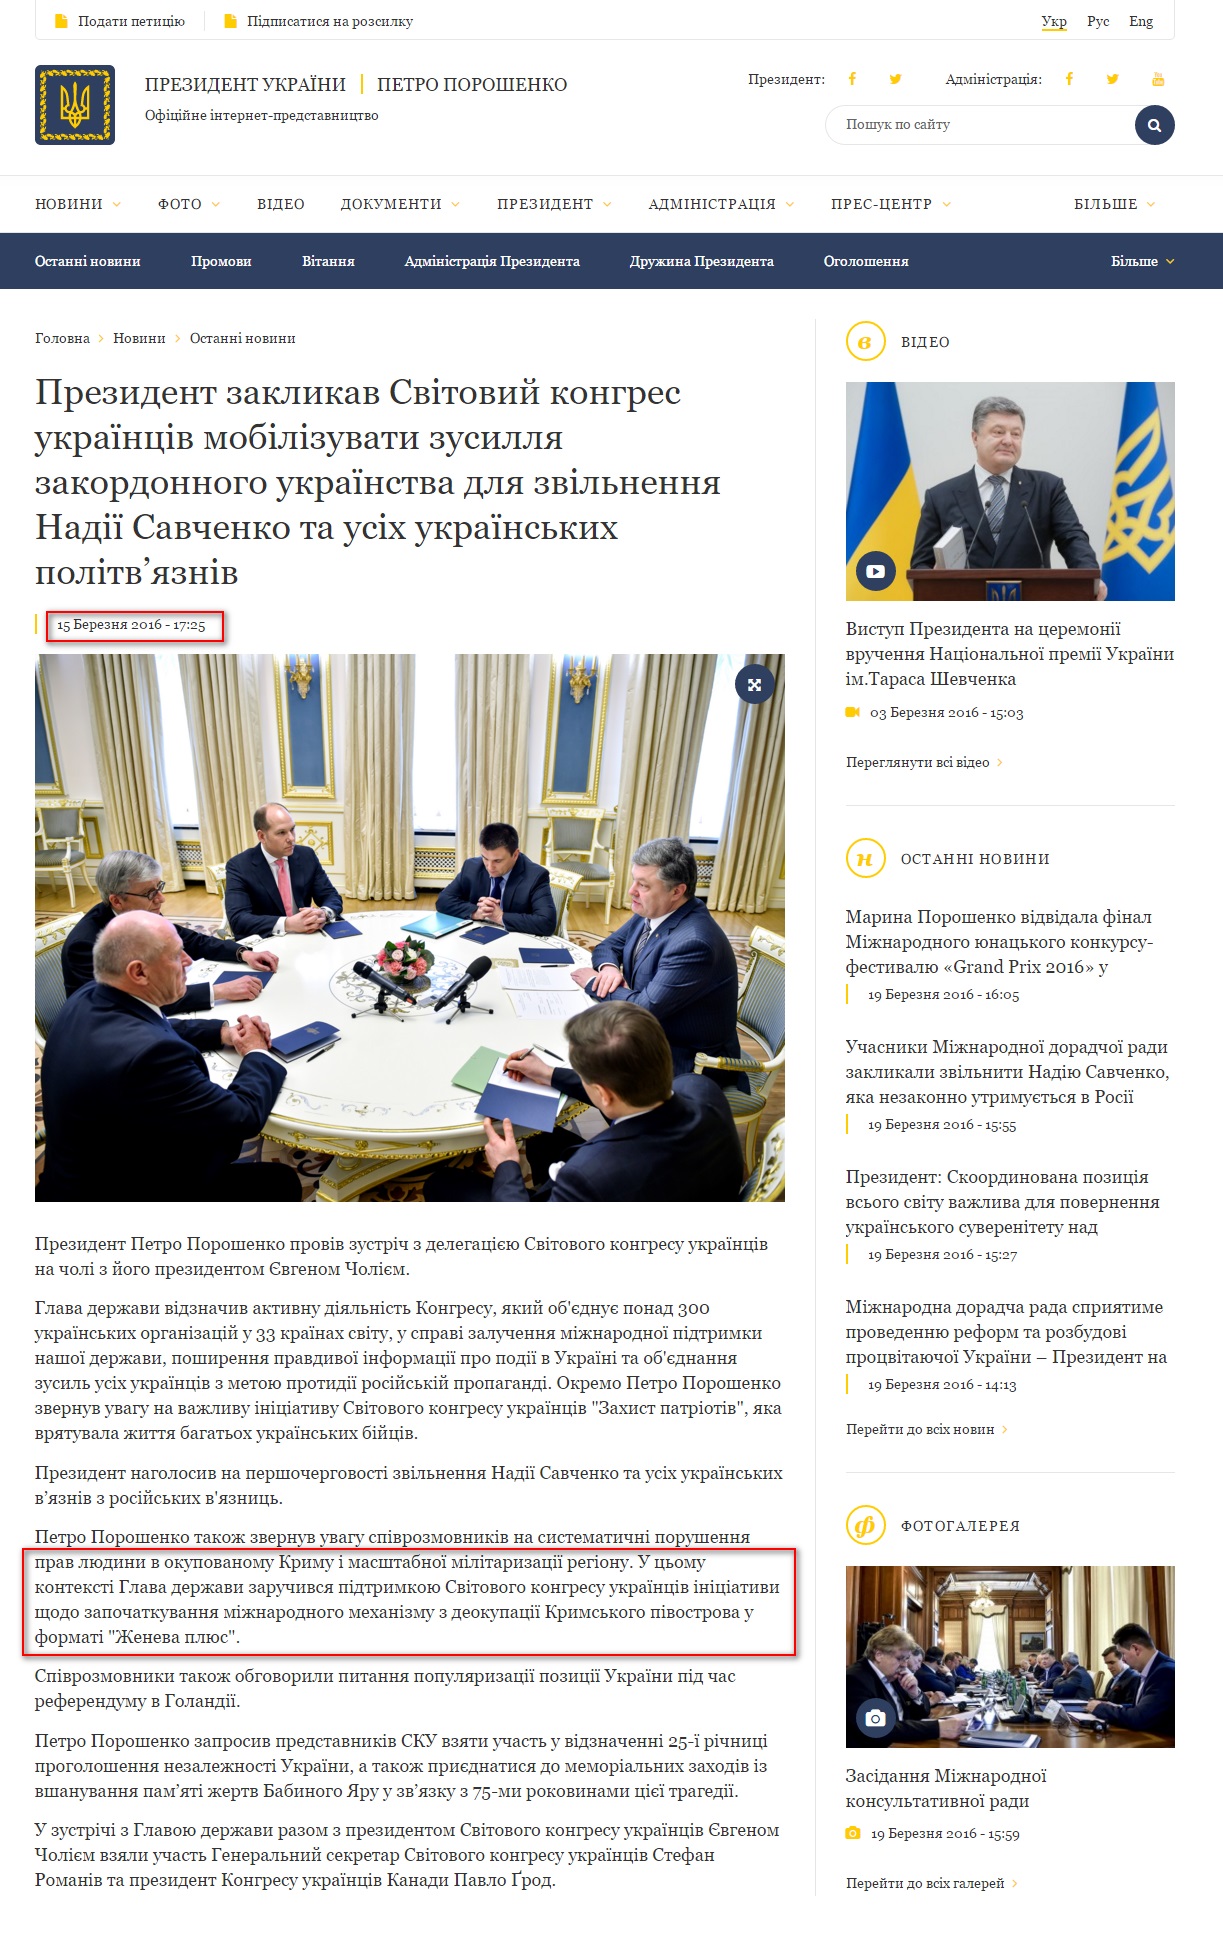 http://www.president.gov.ua/news/prezident-zaklikav-svitovij-kongres-ukrayinciv-mobilizuvati-36852